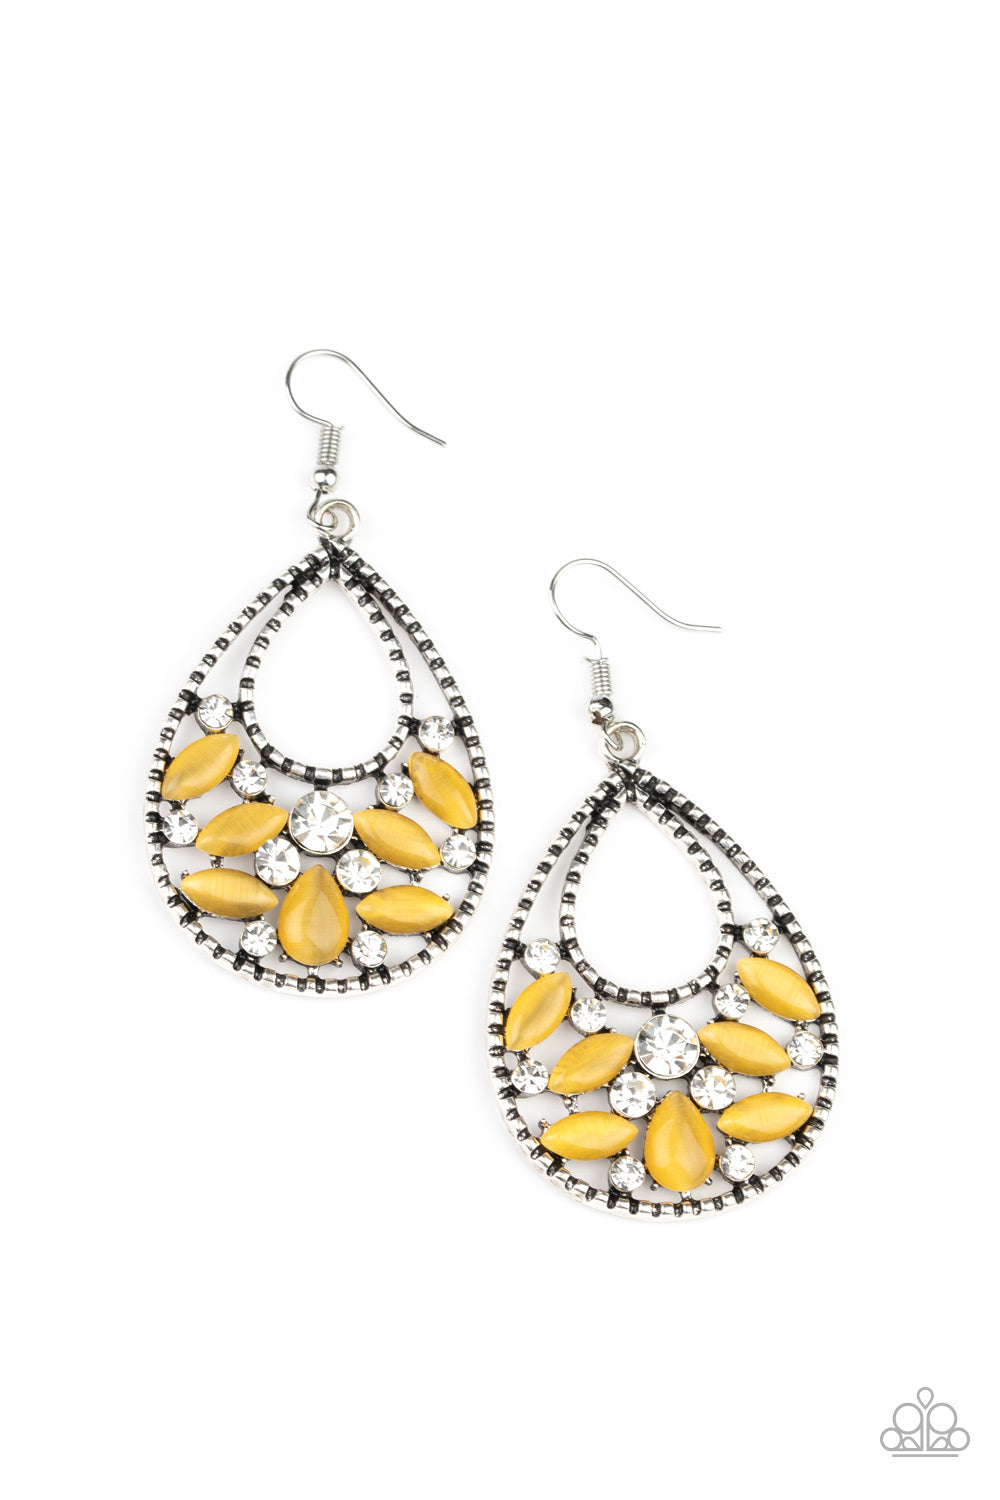 Dewy Dazzle - Yellow earrings